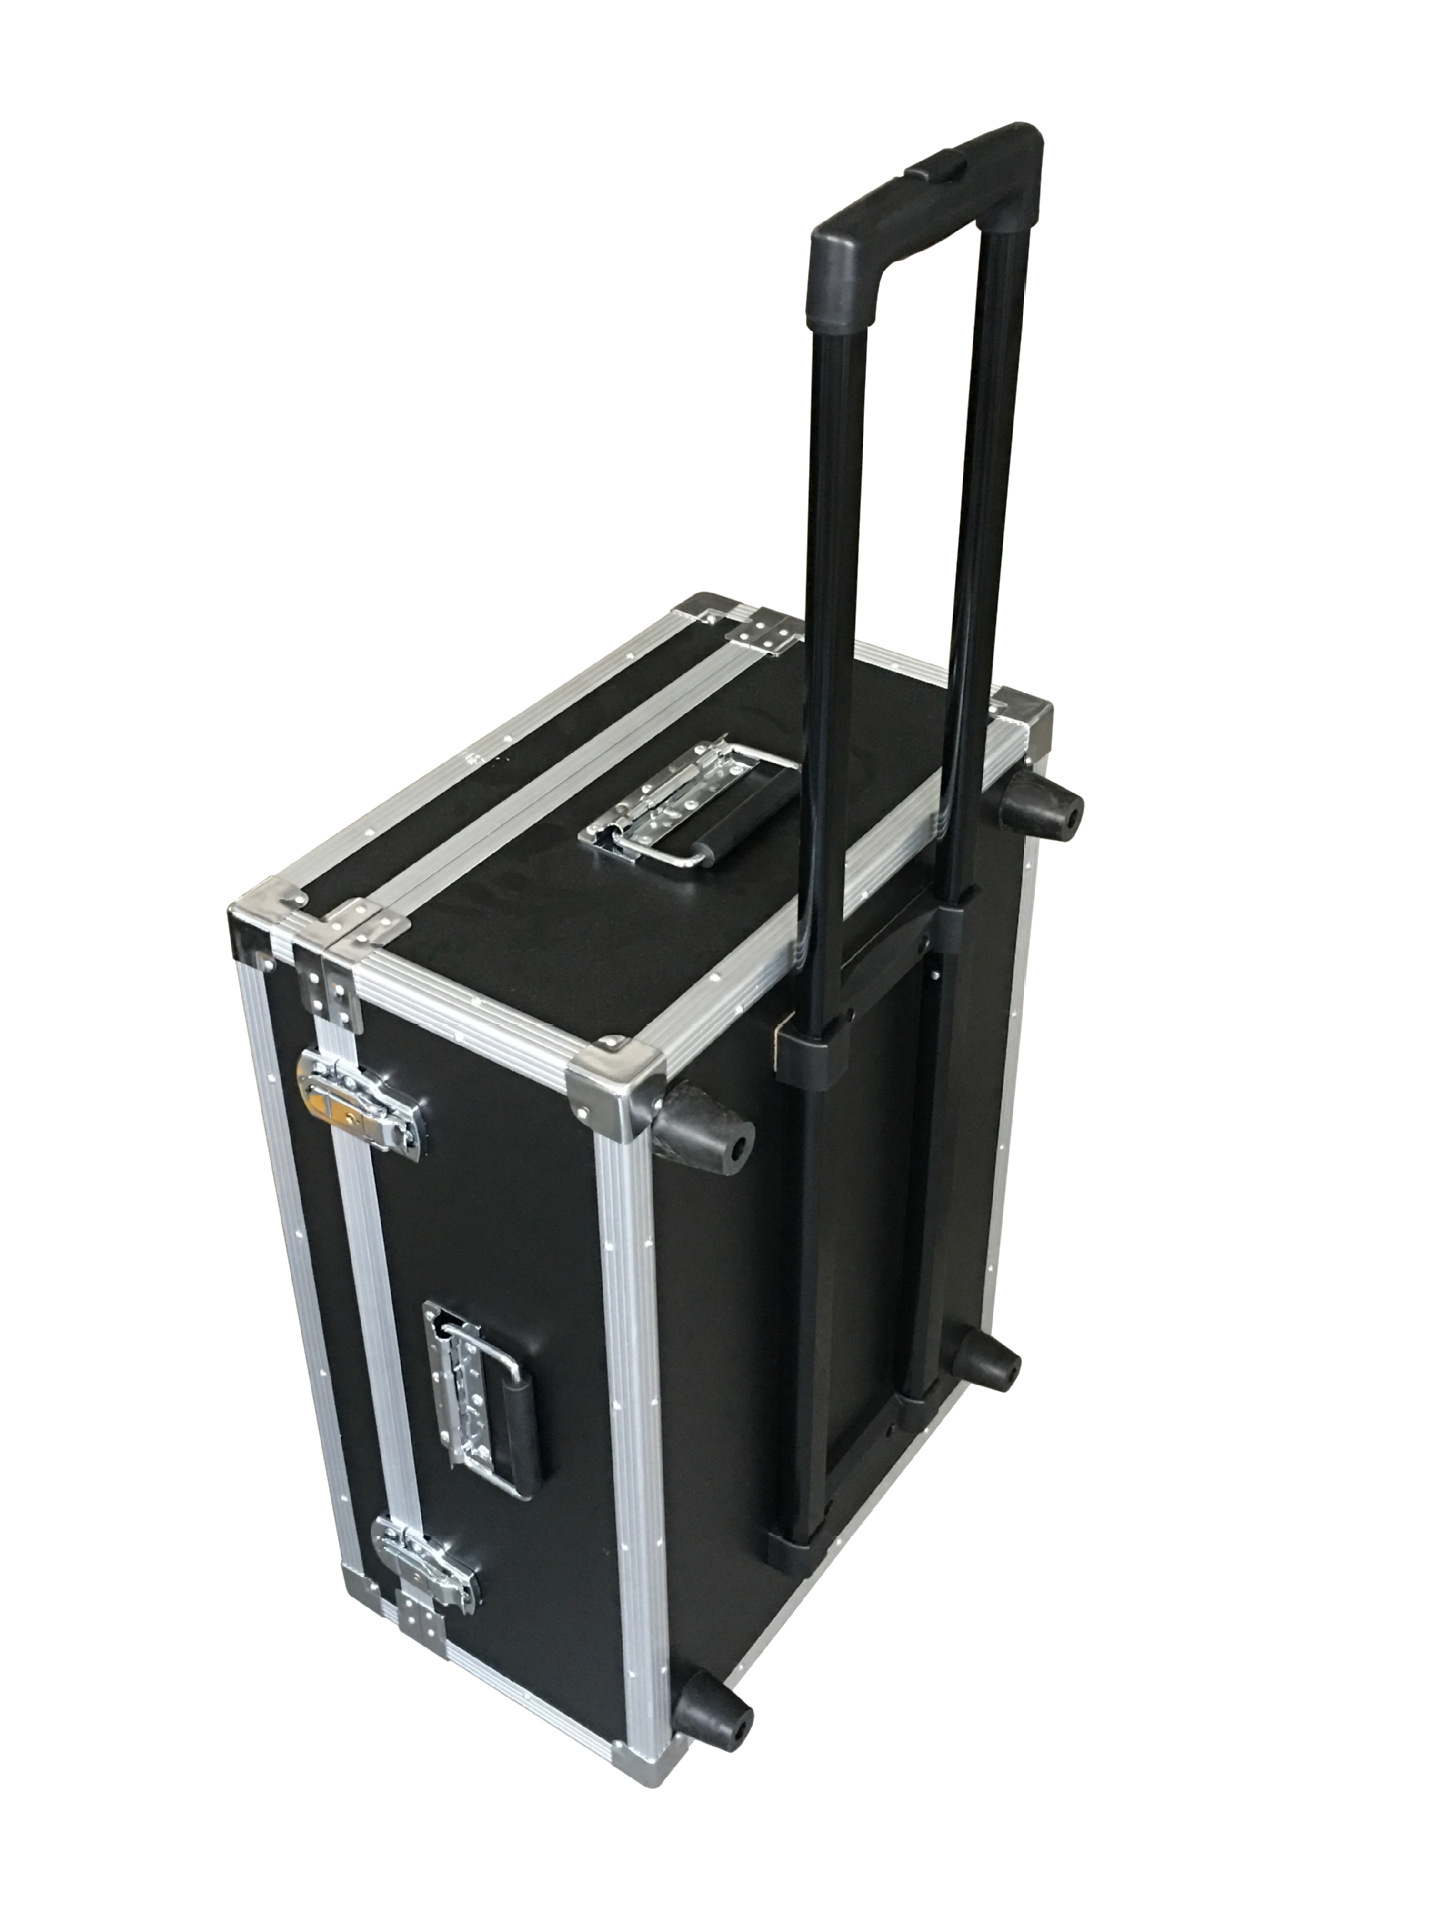 陕西三峰精密仪器包装箱 检测设备包装箱 设备运输包装箱订制厂家示例图7